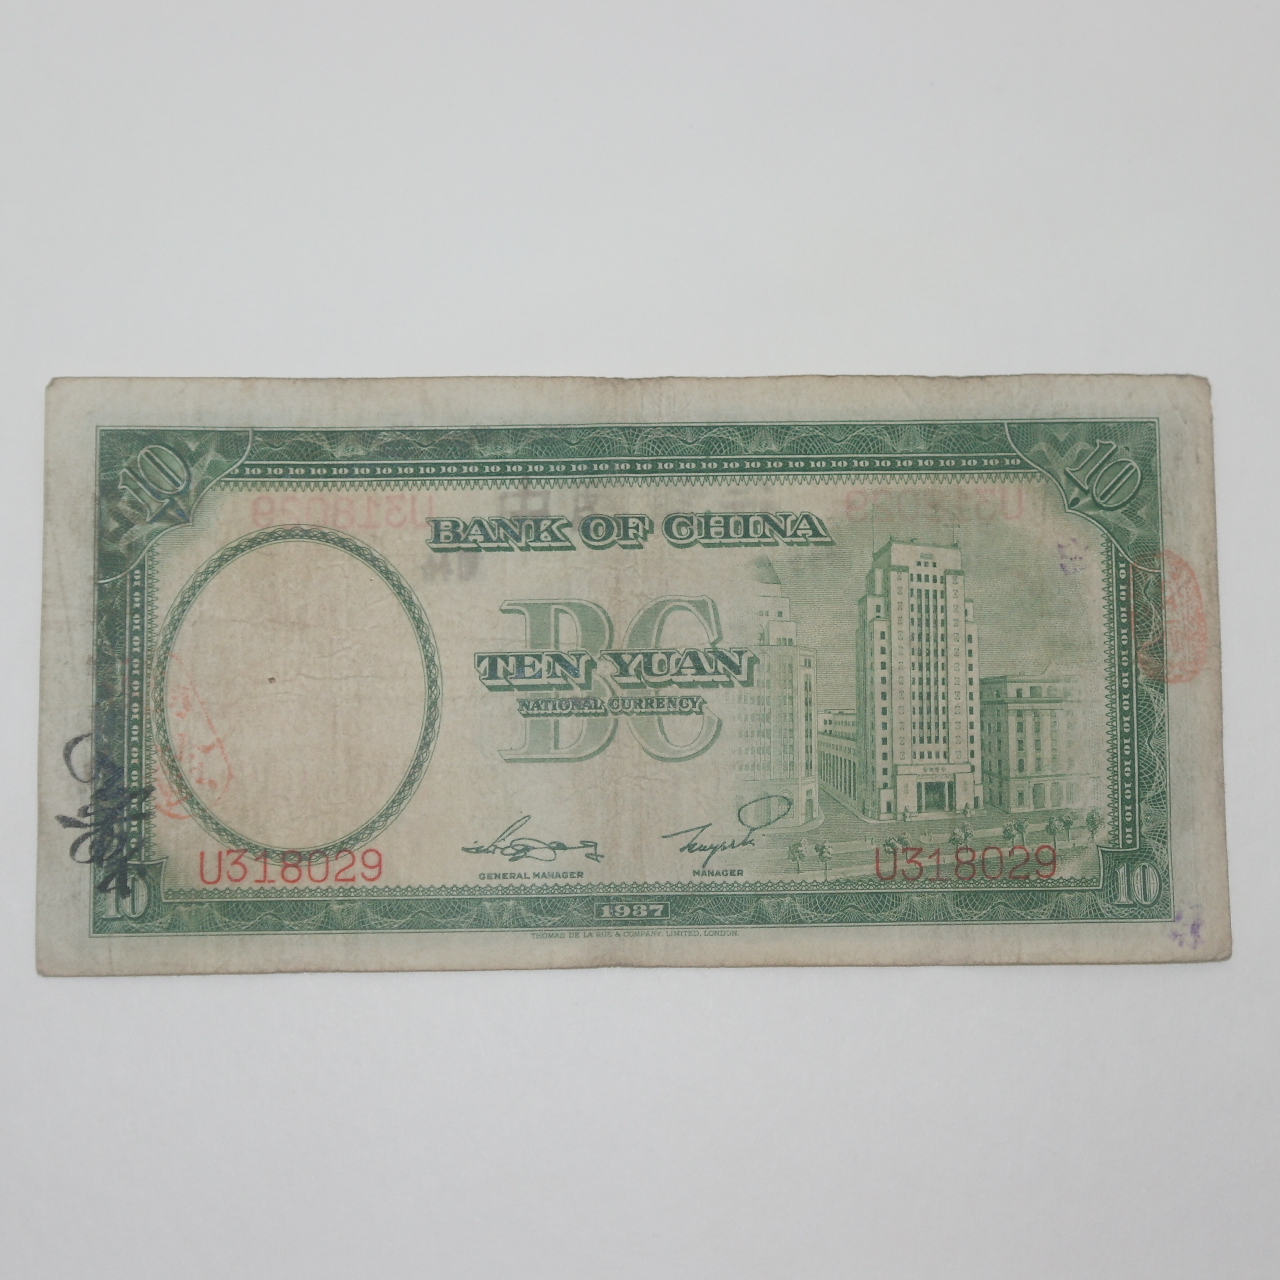 1937년(중화민국26년) 중국은행 십원 지폐